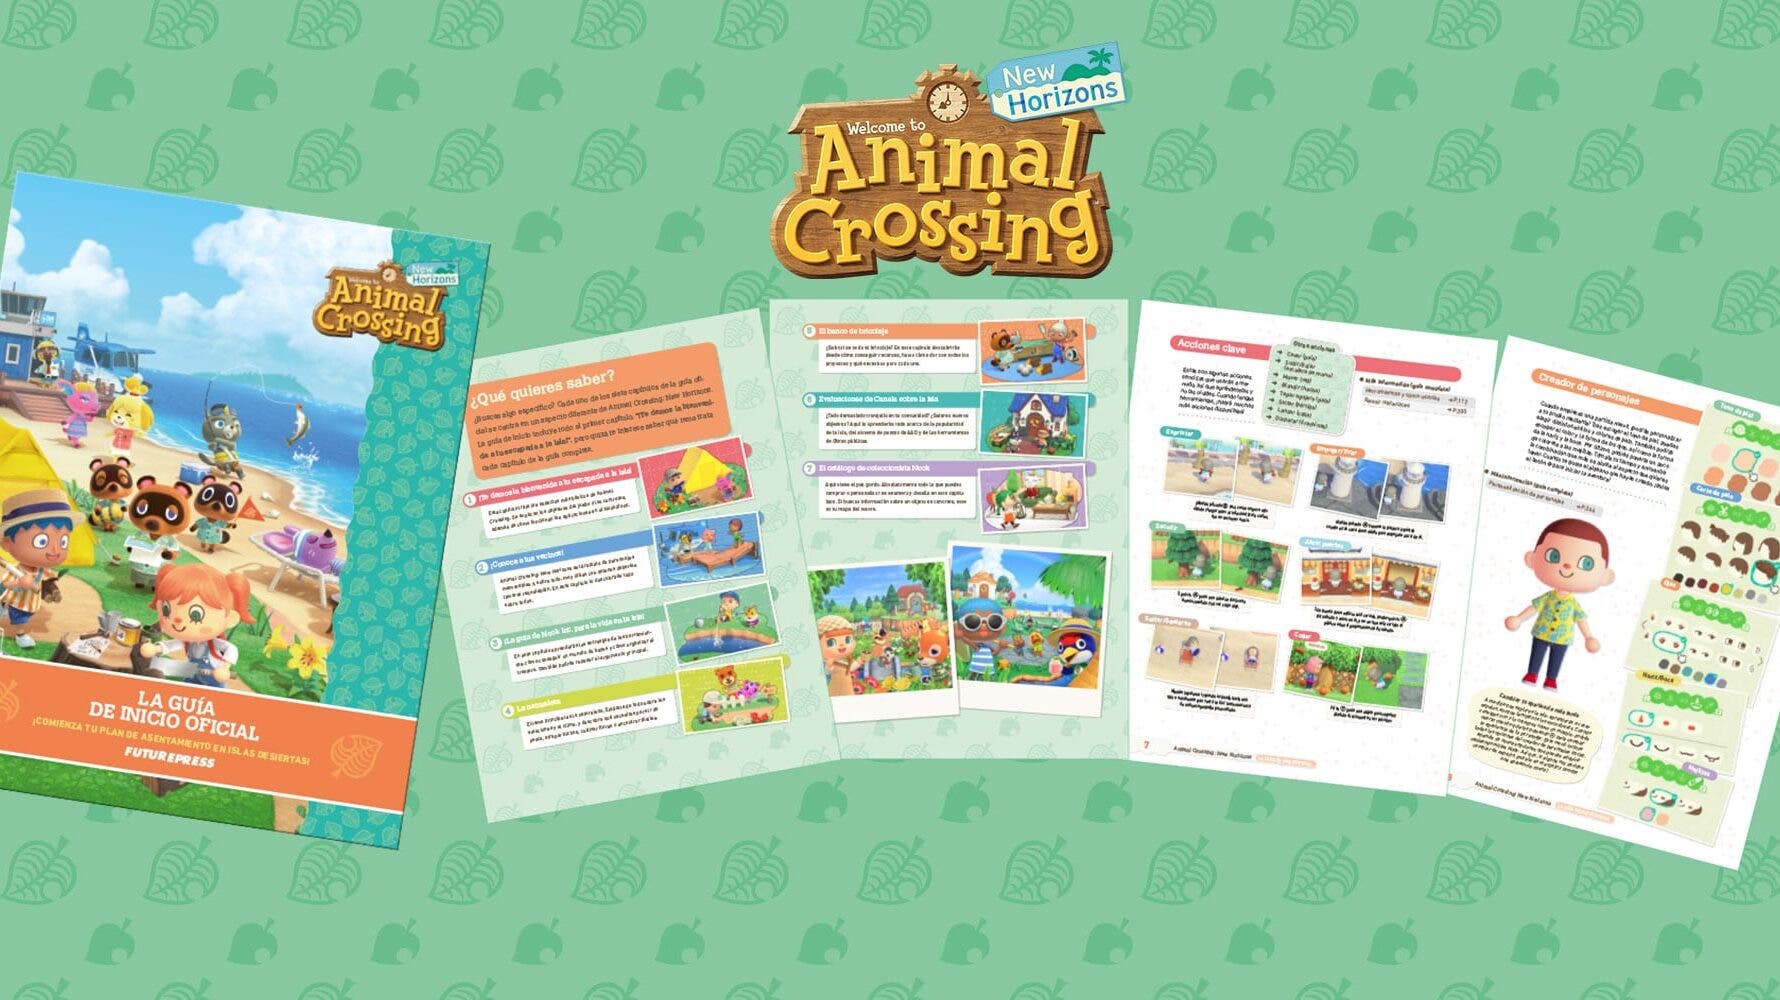 El catálogo europeo de My Nintendo añade una guía de inicio de Animal Crossing: New Horizons